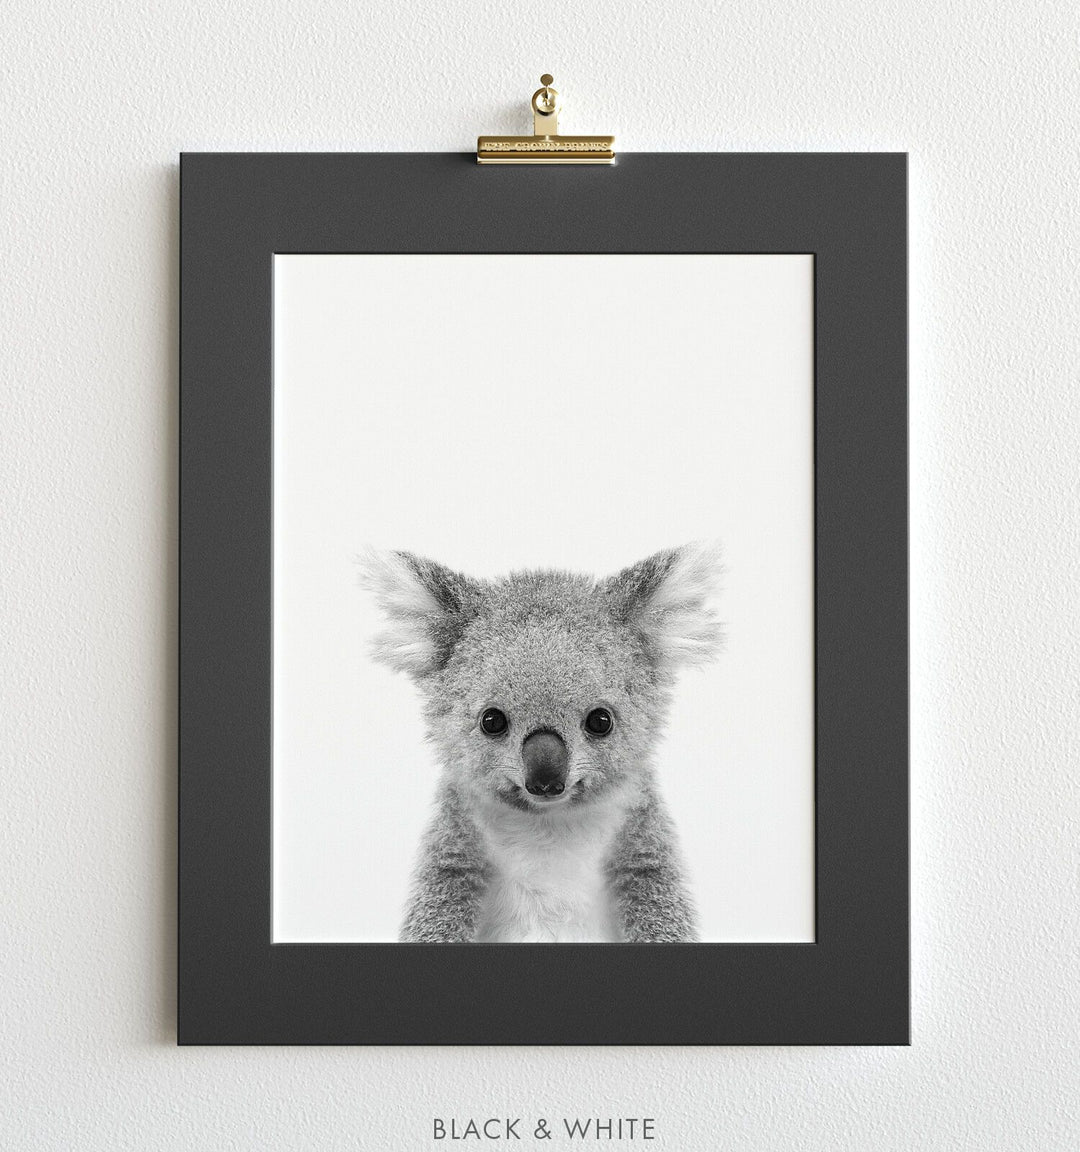 Baby Koala - The Crown Prints